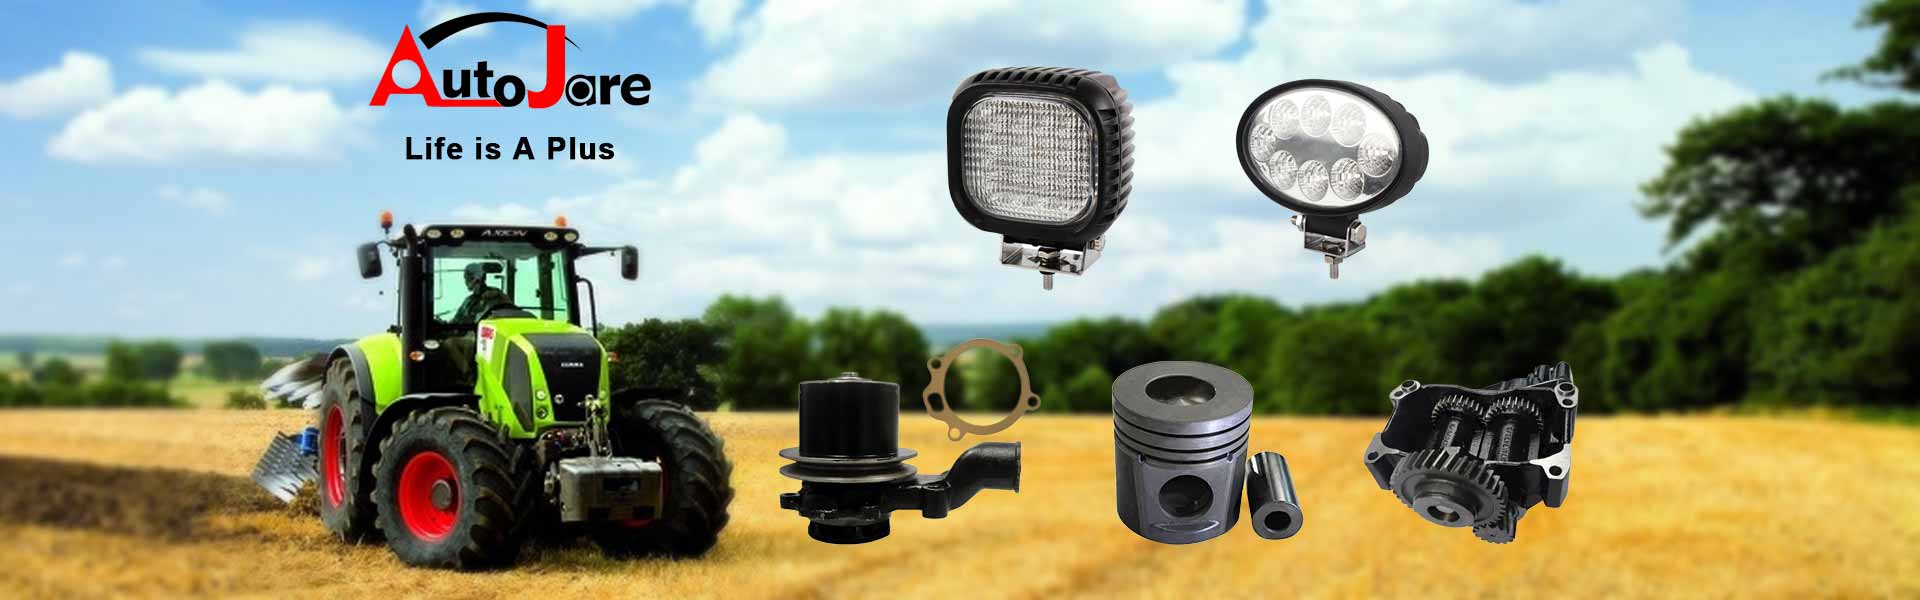 Autojare- Ihrem Spezialisten für Traktorteile, Dieselmotor Teile,  Baumaschinenteile, Elektrowerkzeuge & Zubehör, LED arbeitsscheinwe